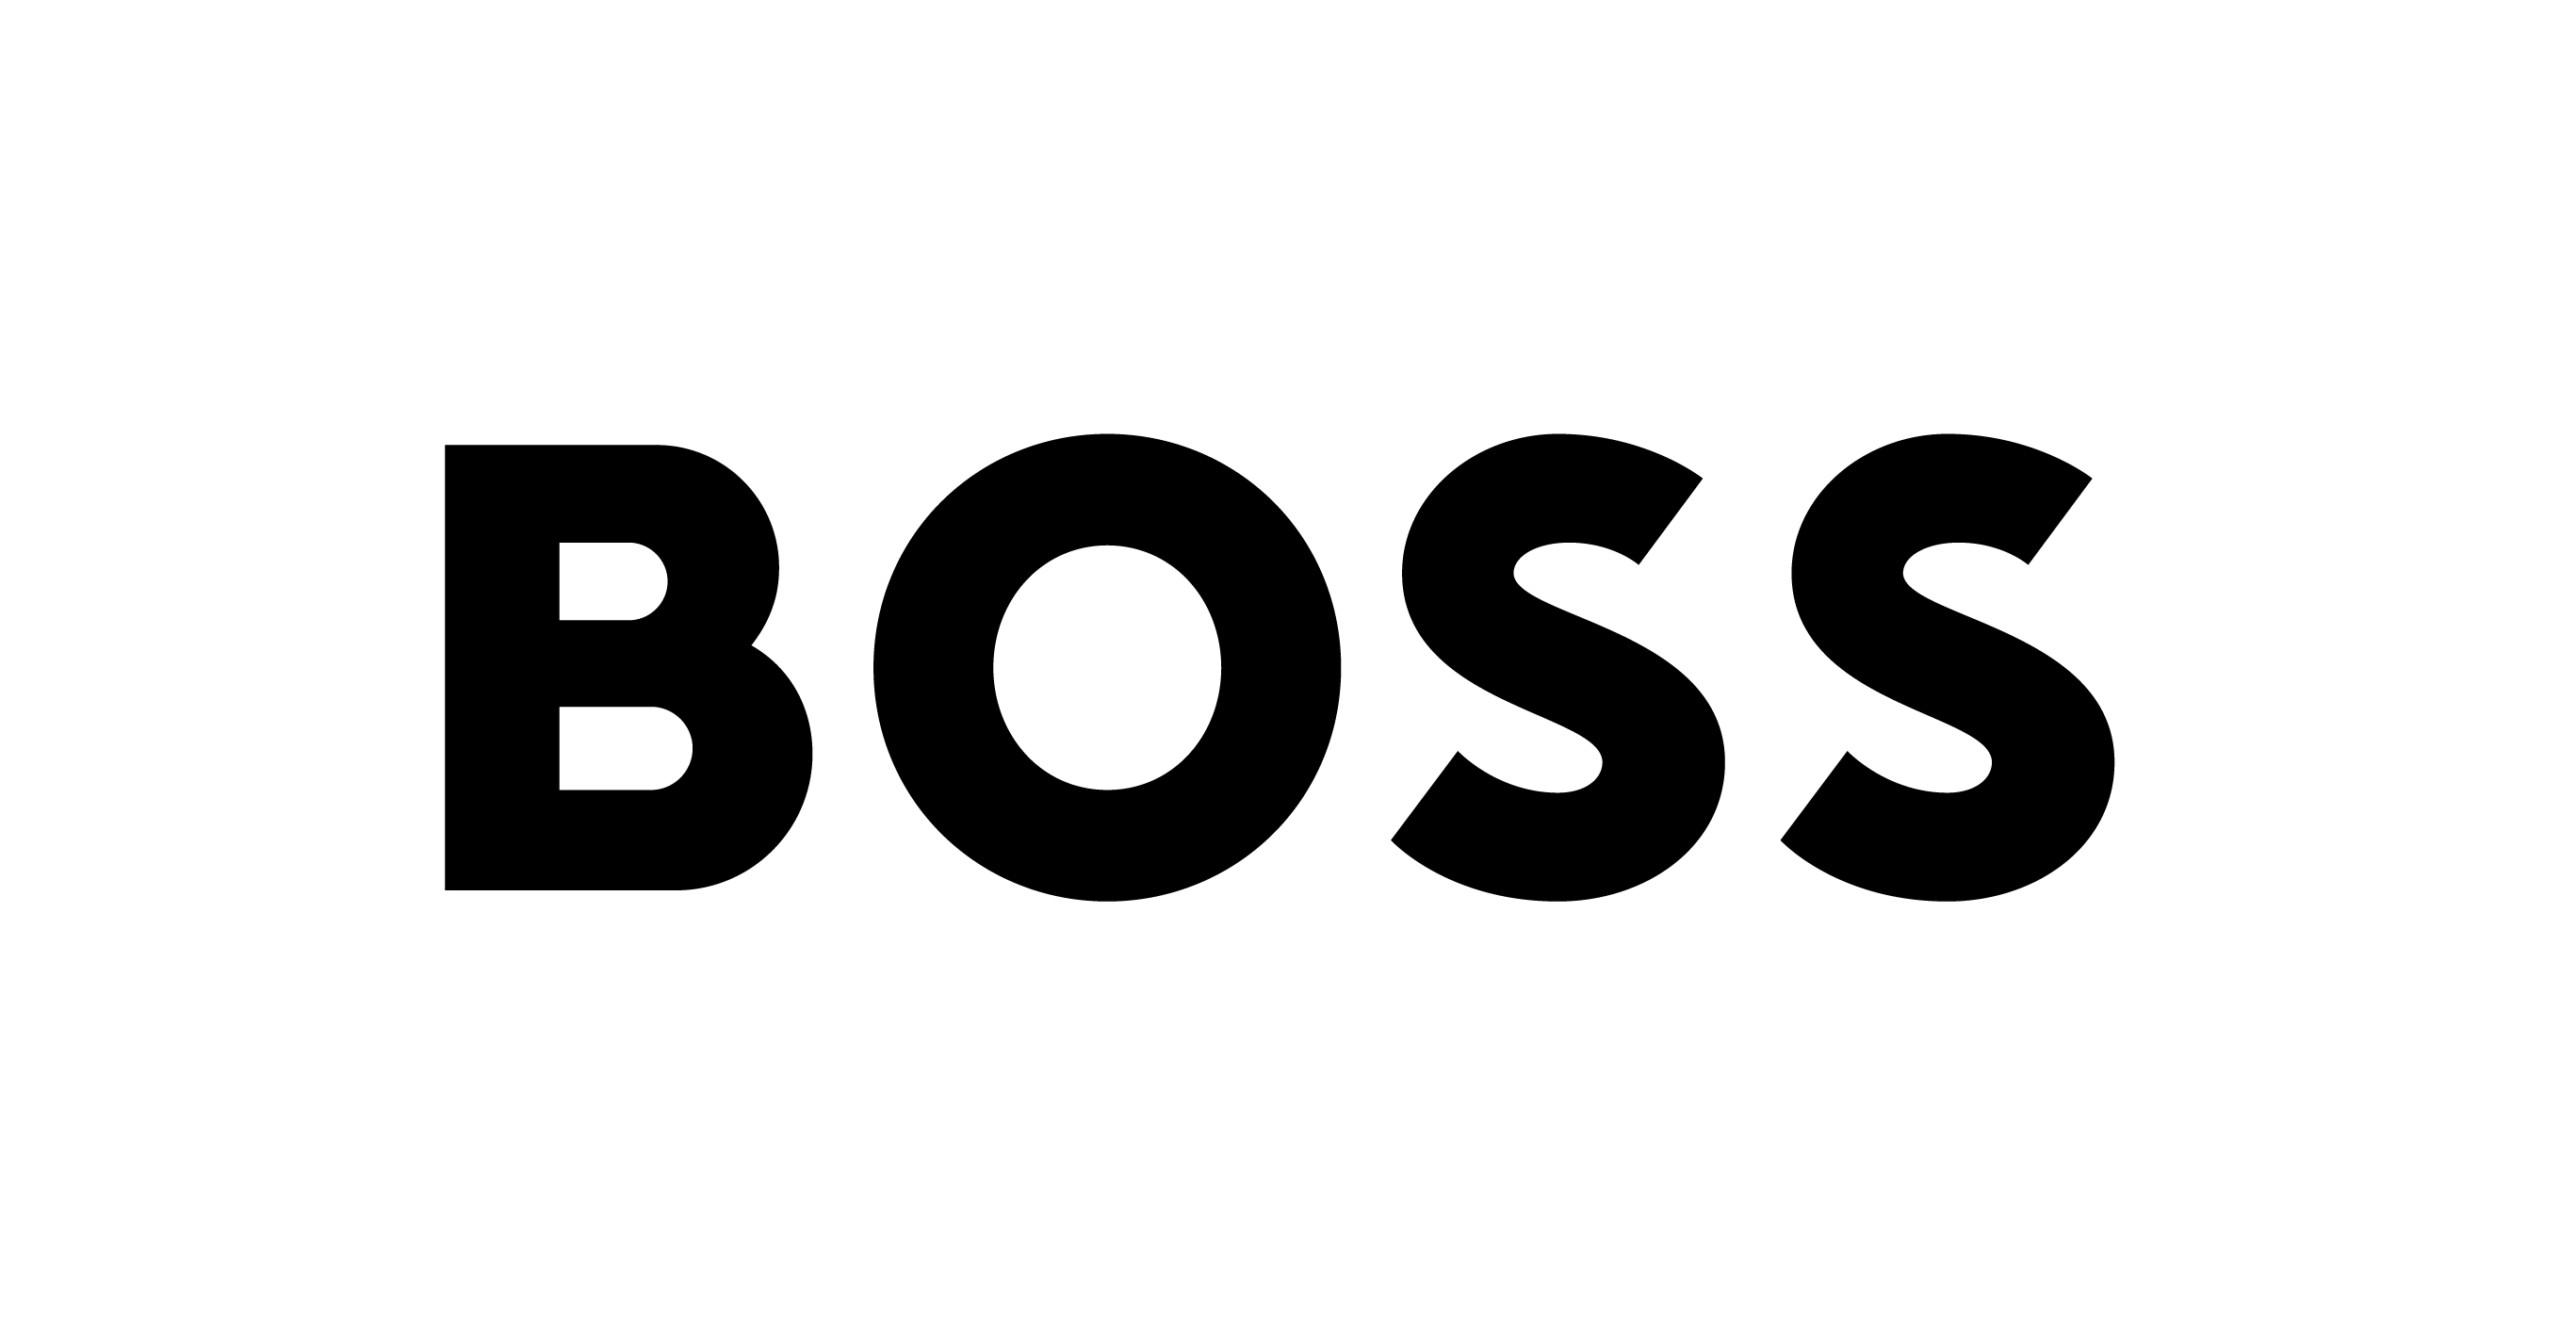 BOSS on globaali vaatebrändi. Tämä tuotemerkki on tunnettu laadukkaista ja tyylikkäistä tuotteista. 